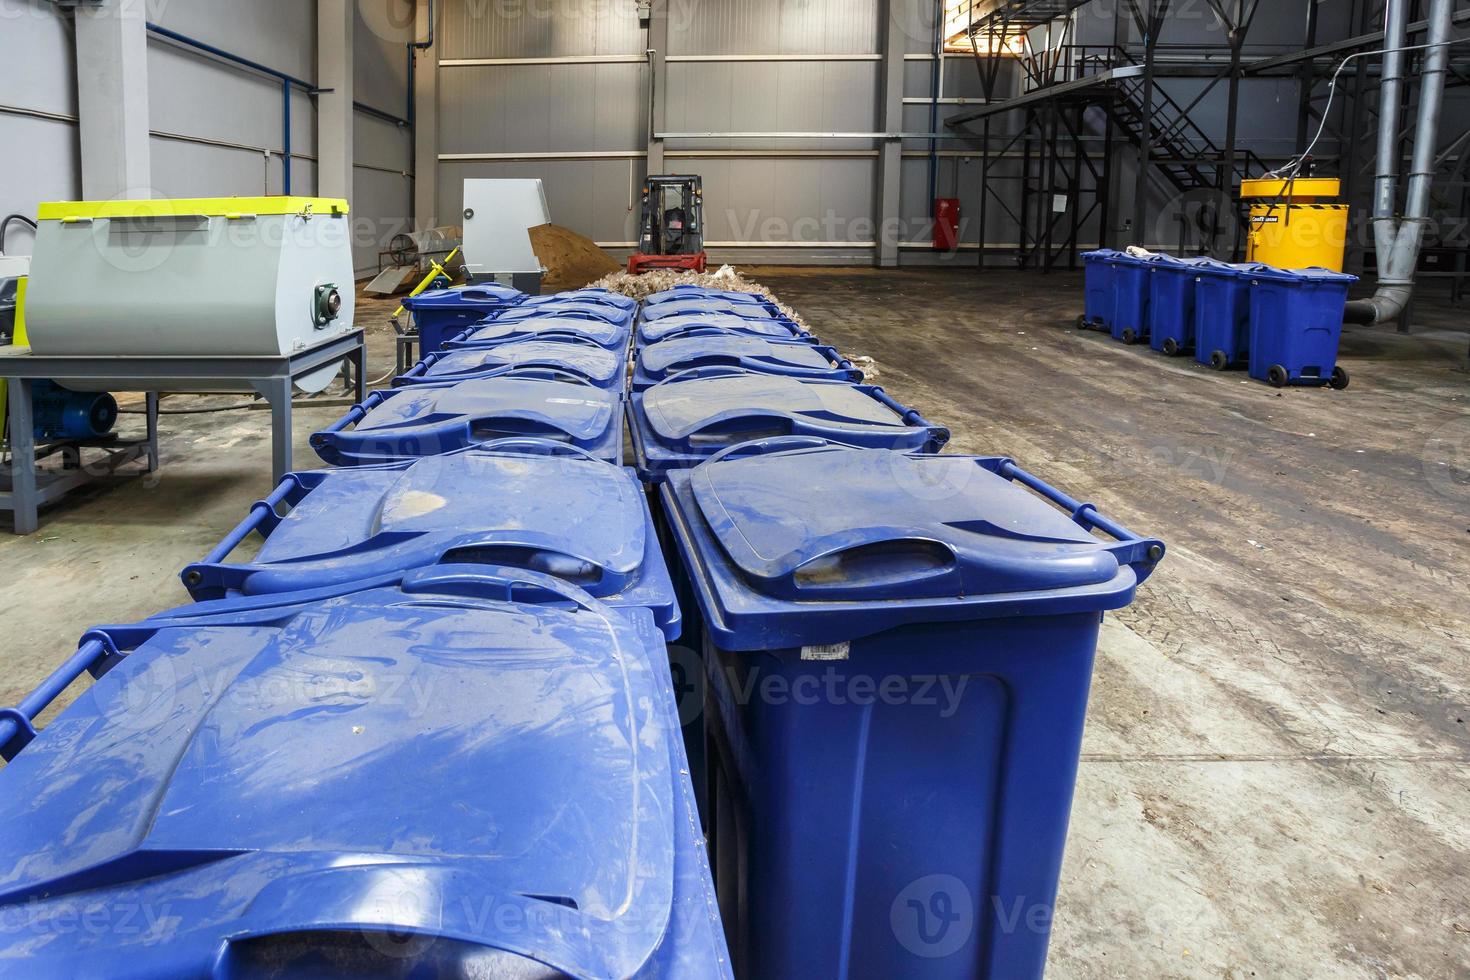 raccolta differenziata dei rifiuti. attrezzature per la pressatura del materiale di smistamento da trattare in un moderno impianto di riciclaggio dei rifiuti. foto